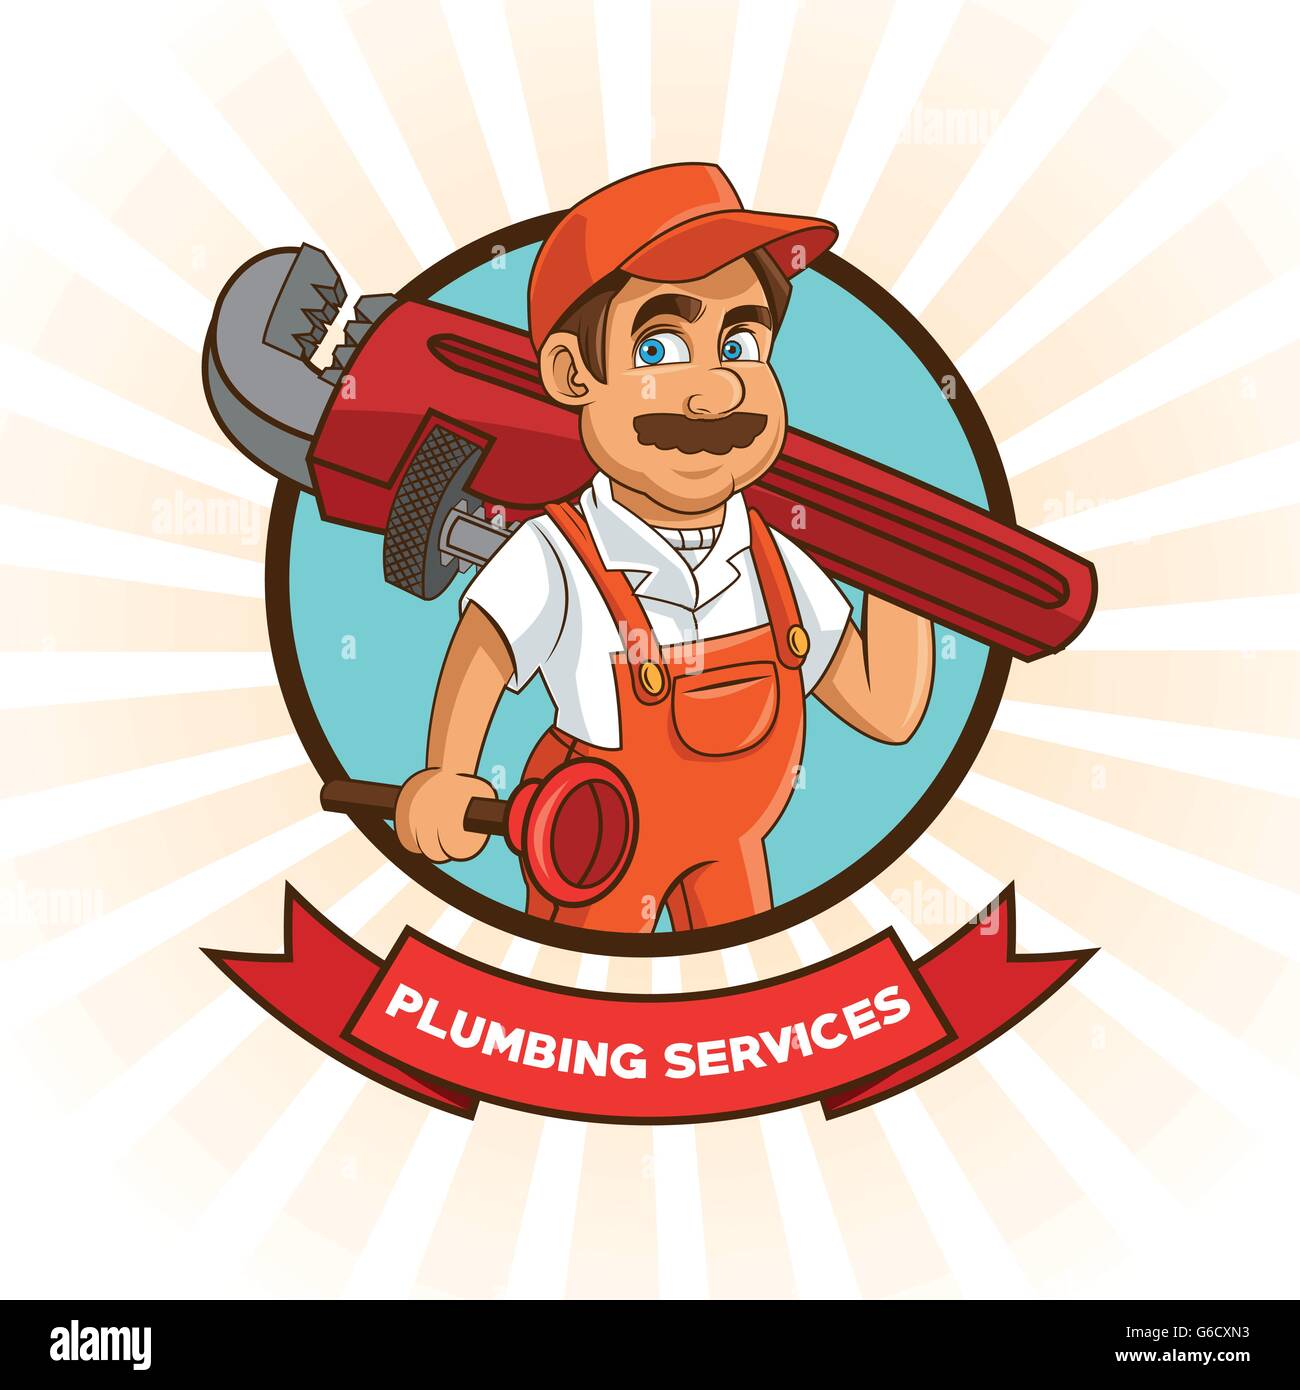 Plumbing Service Plumber Cartoon Design Vector Graphic Stock Vector